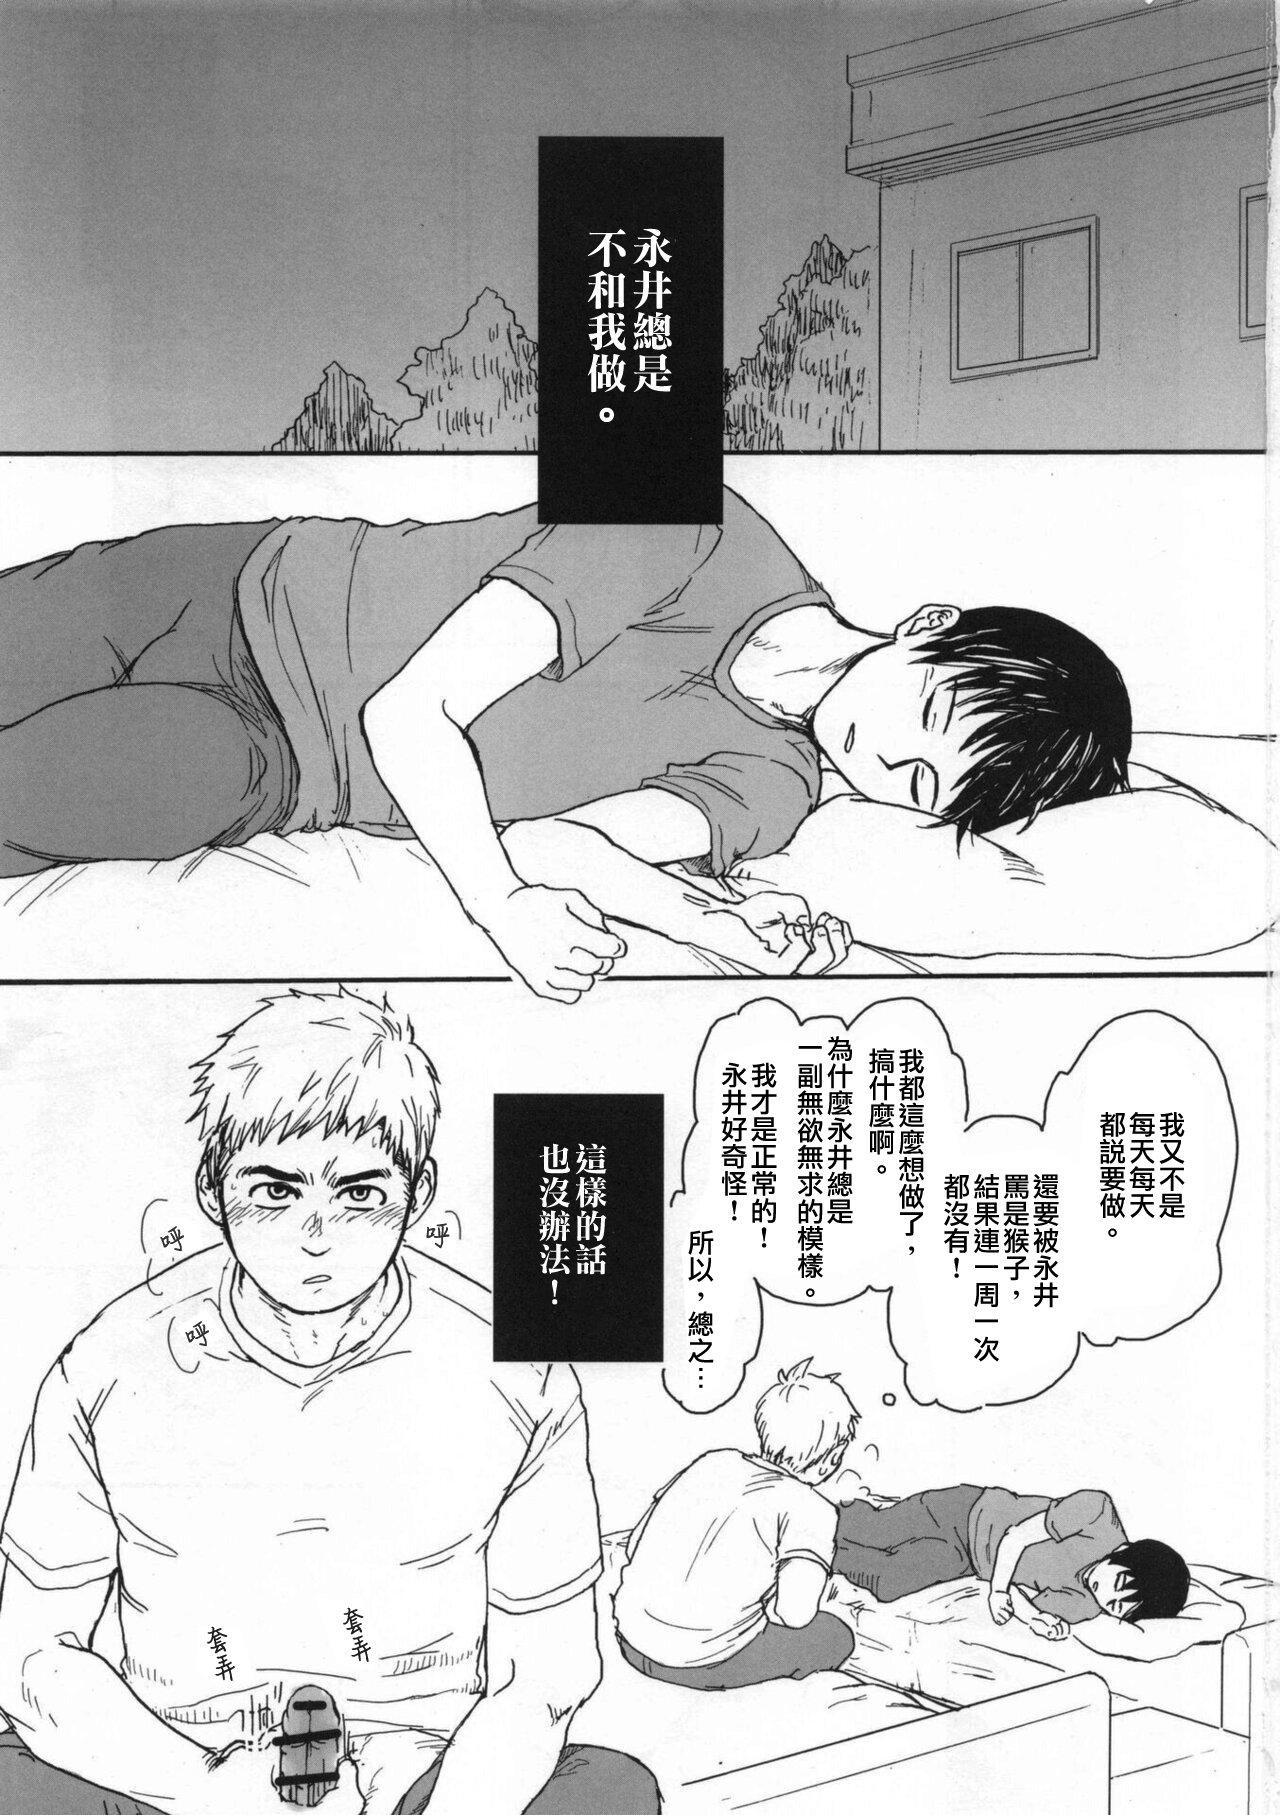 Porno Amateur Ajin 亜人 ( 今日だけ解禁） - Ajin Motel - Page 2